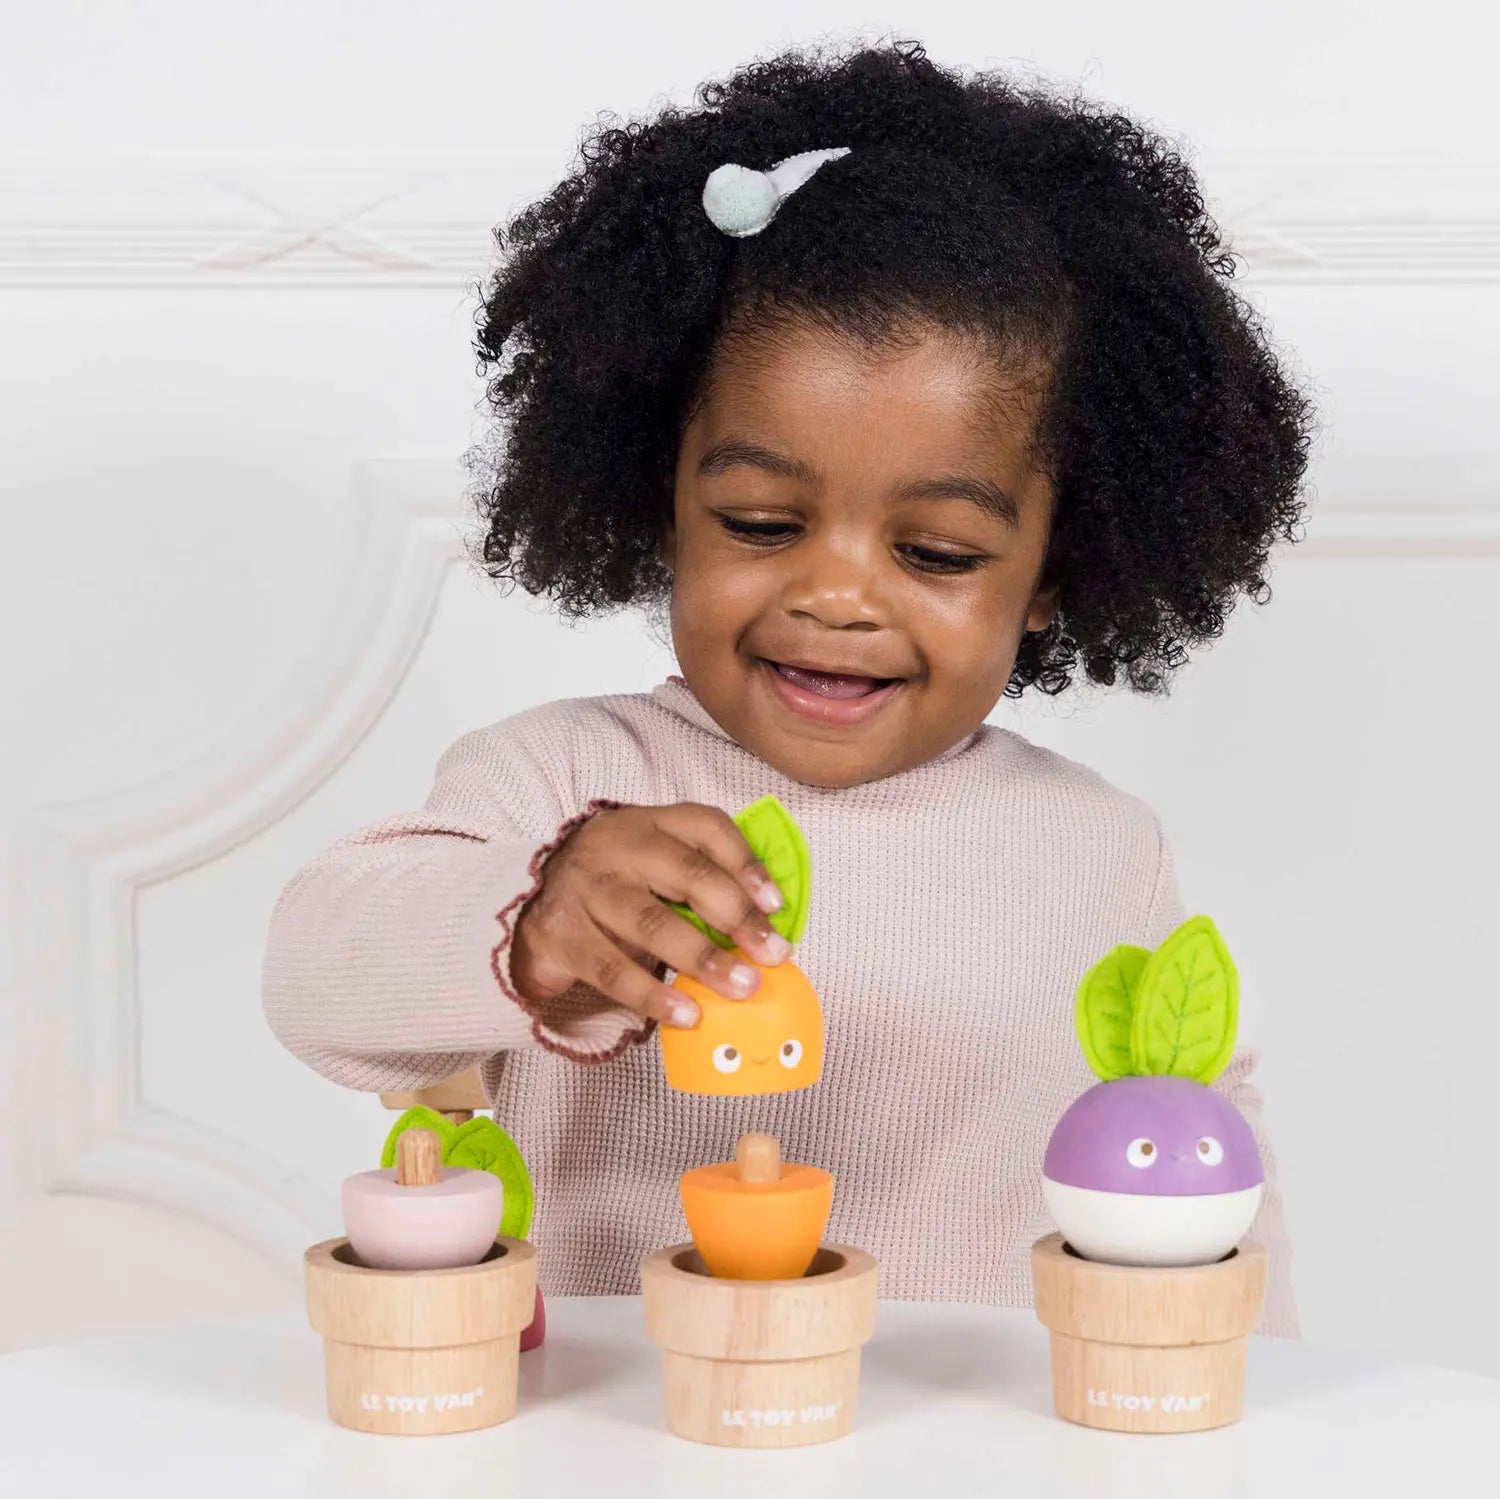 Een vrolijke set van Le Toy Van met drie soorten houtachtige groenten in natuurlijke houten potten - spelend meisje